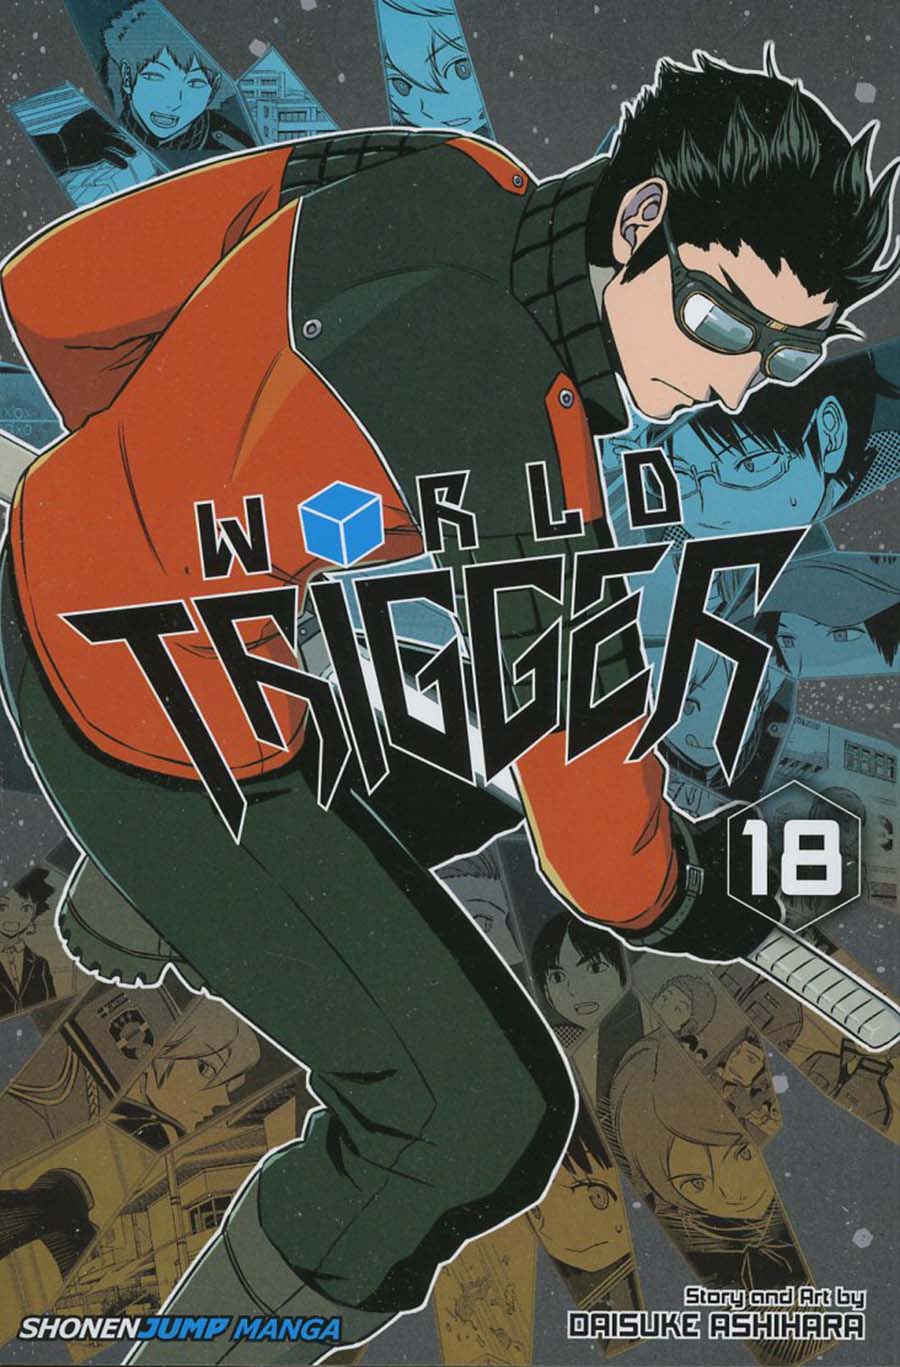 World Trigger Vol 18 TP